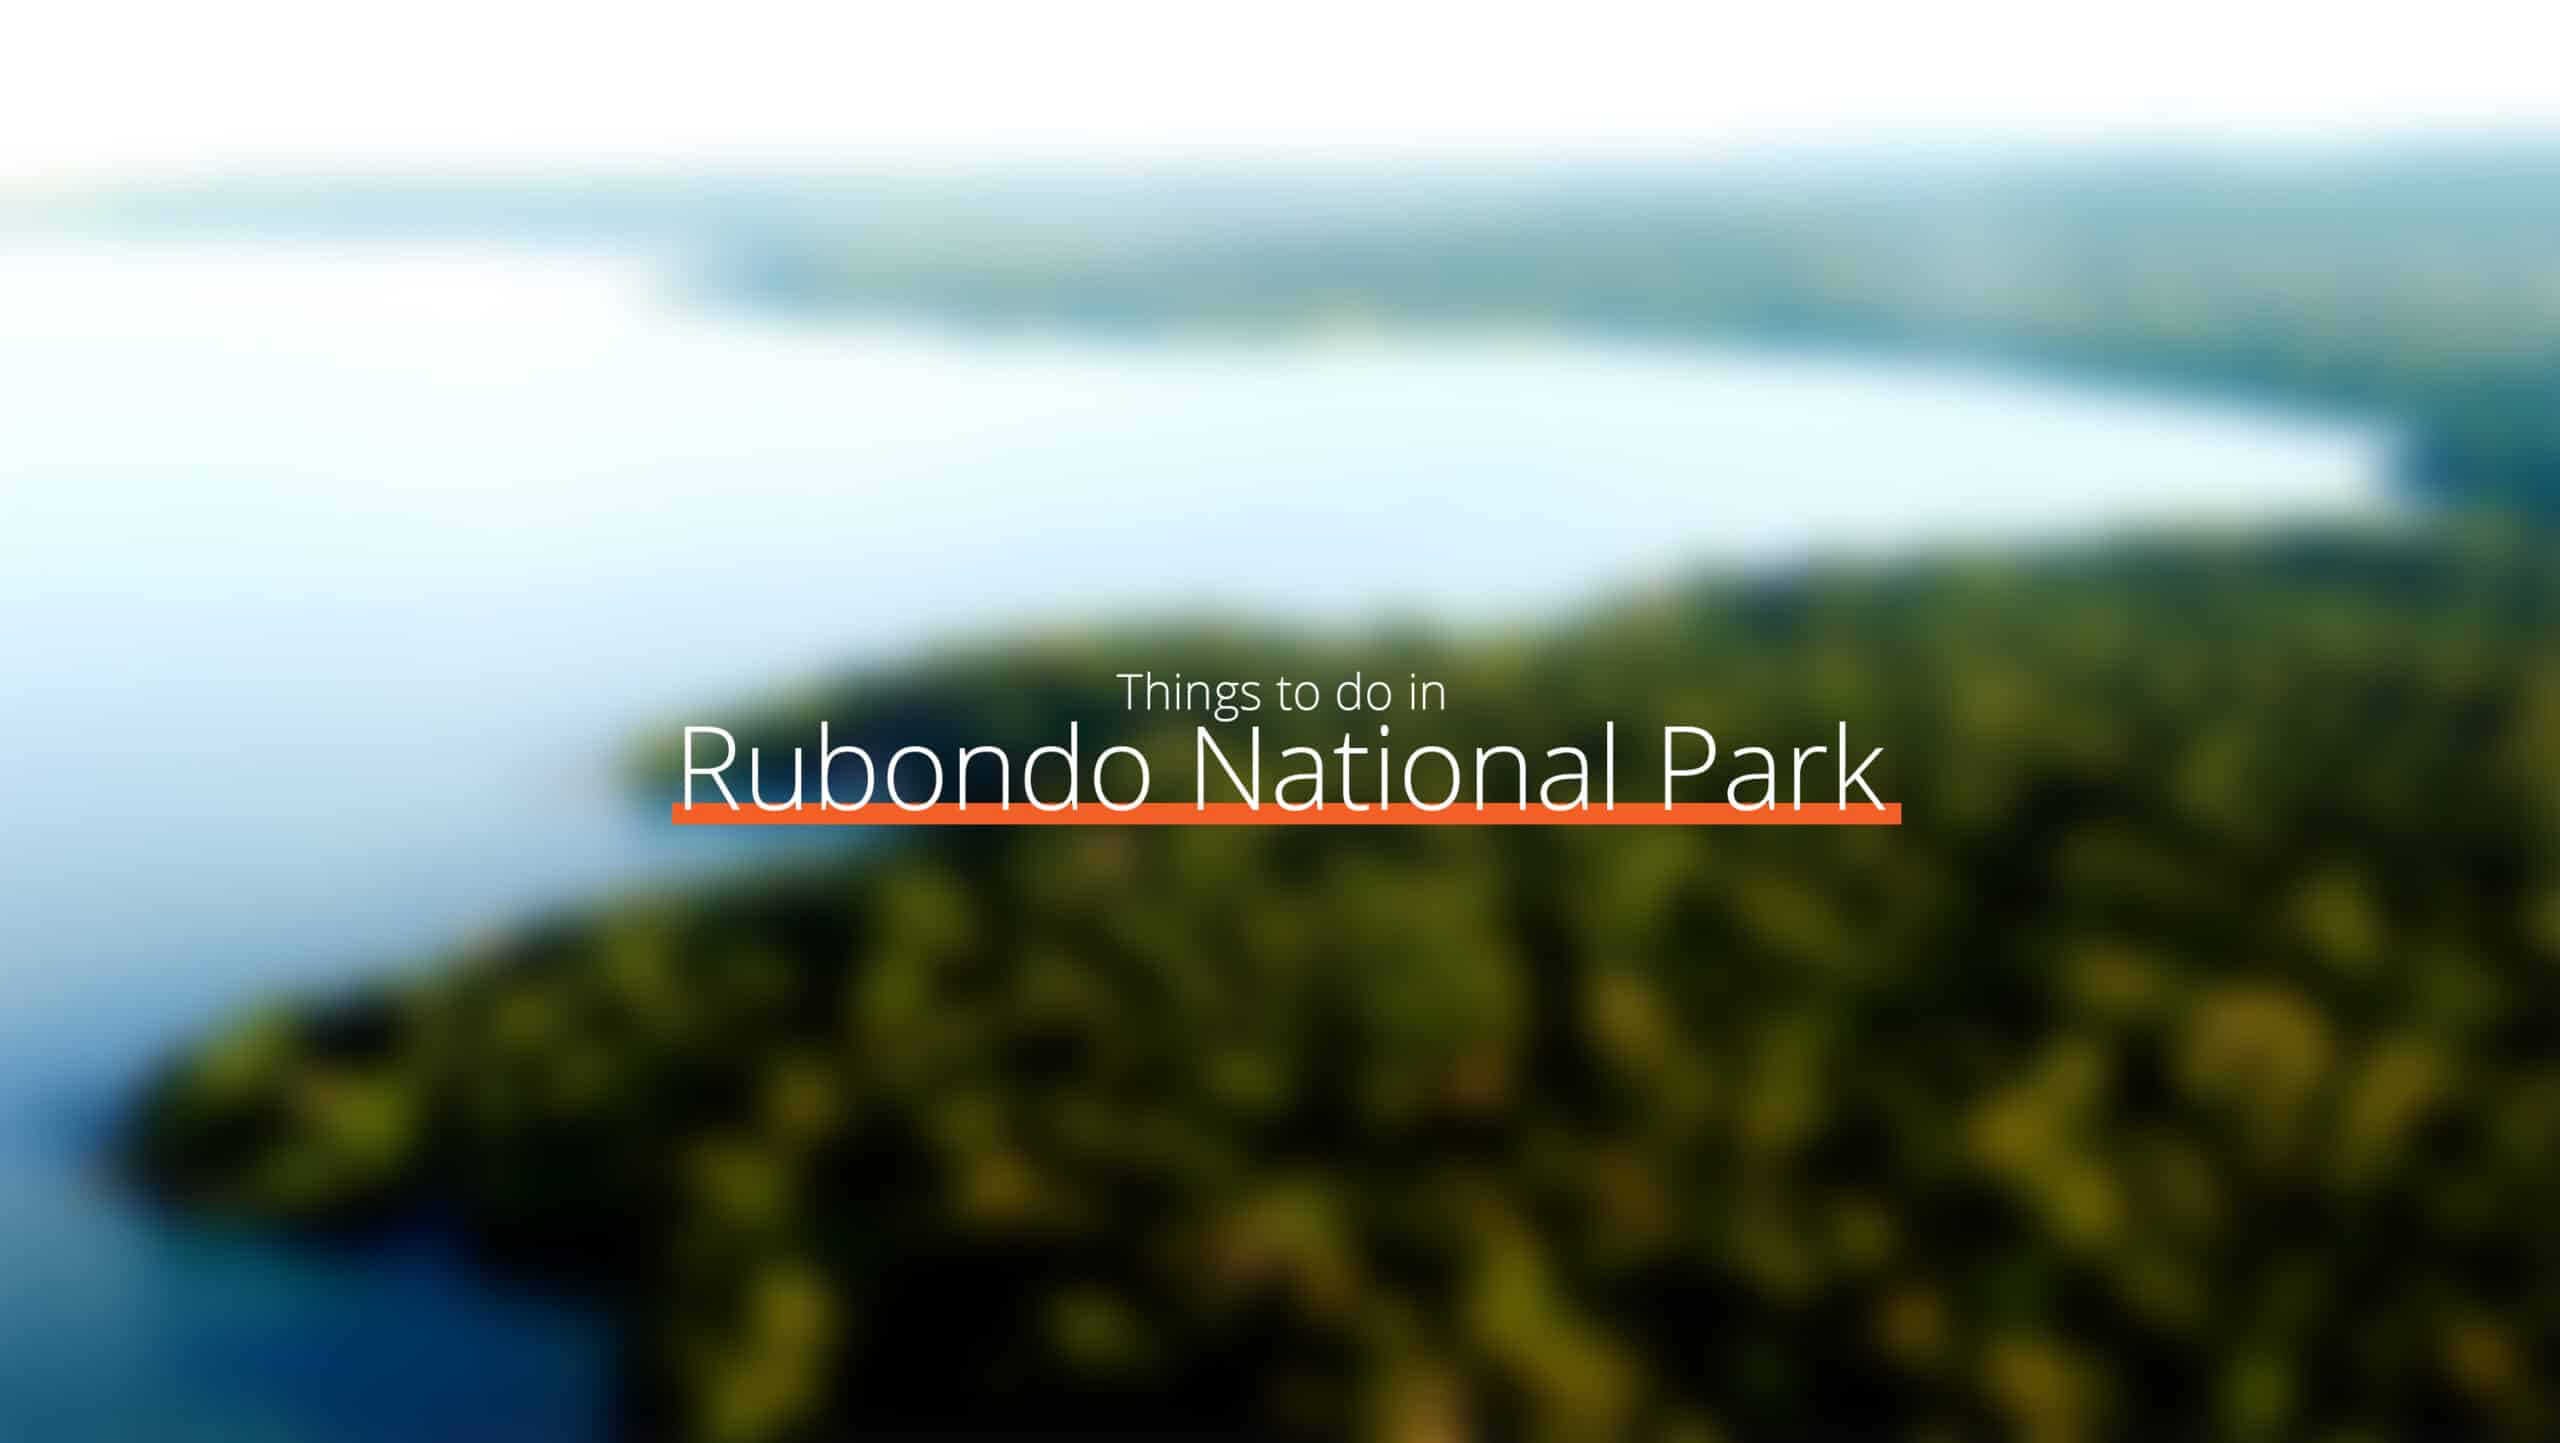 坦桑尼亚 - 规模扩大的鲁邦多国家公园 - 当地法律和习俗